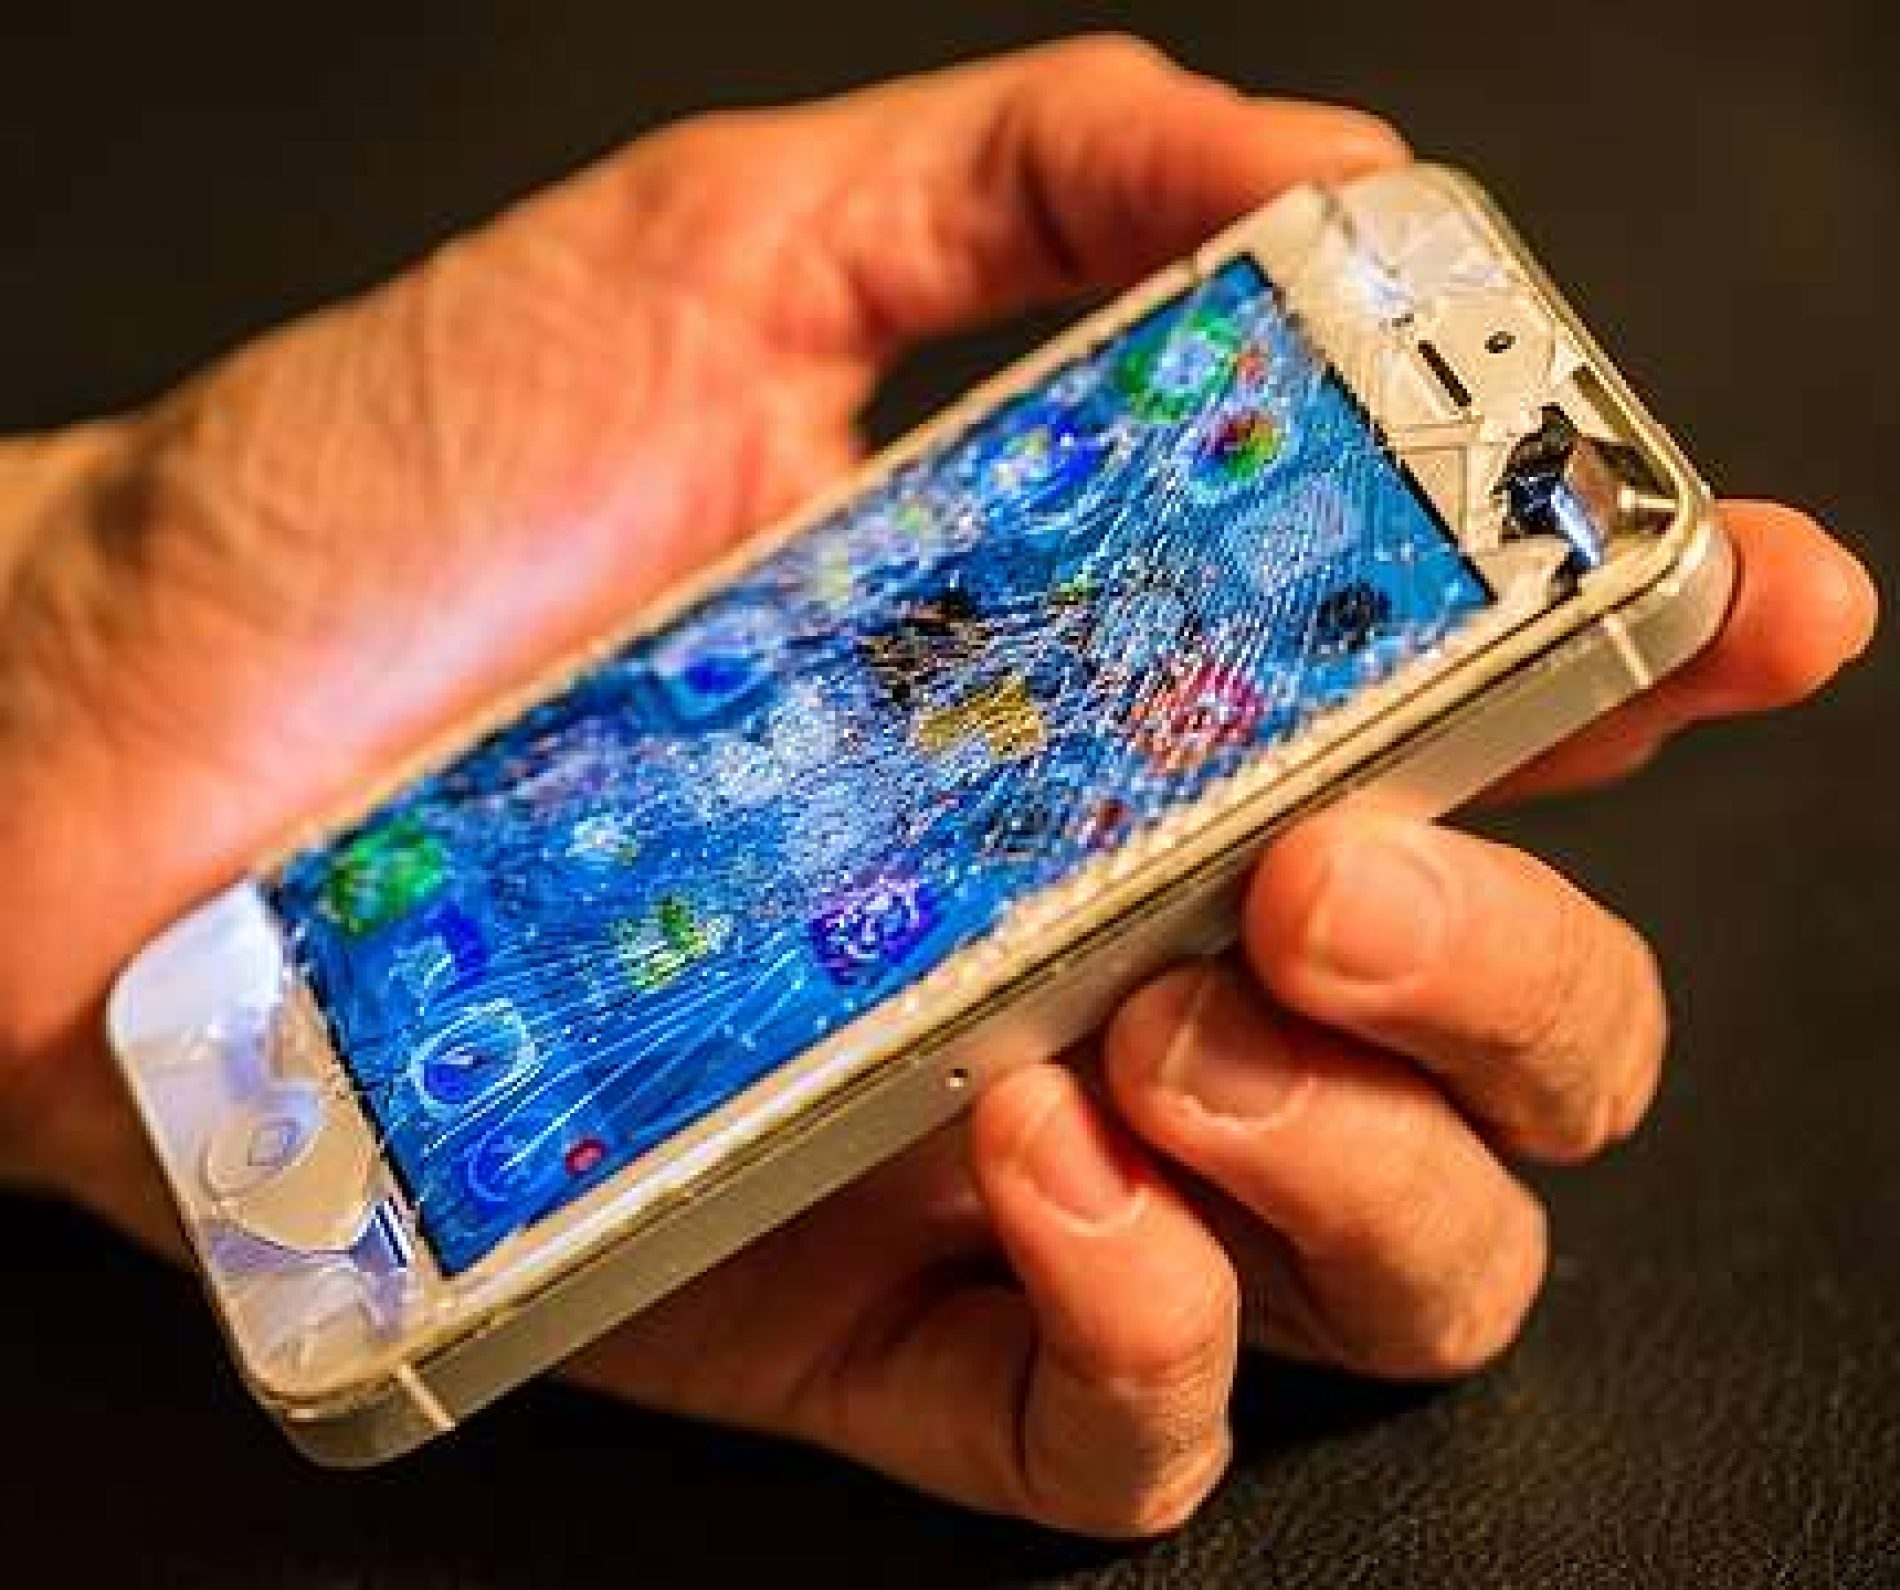 Homem tem celular danificado por ex-mulher